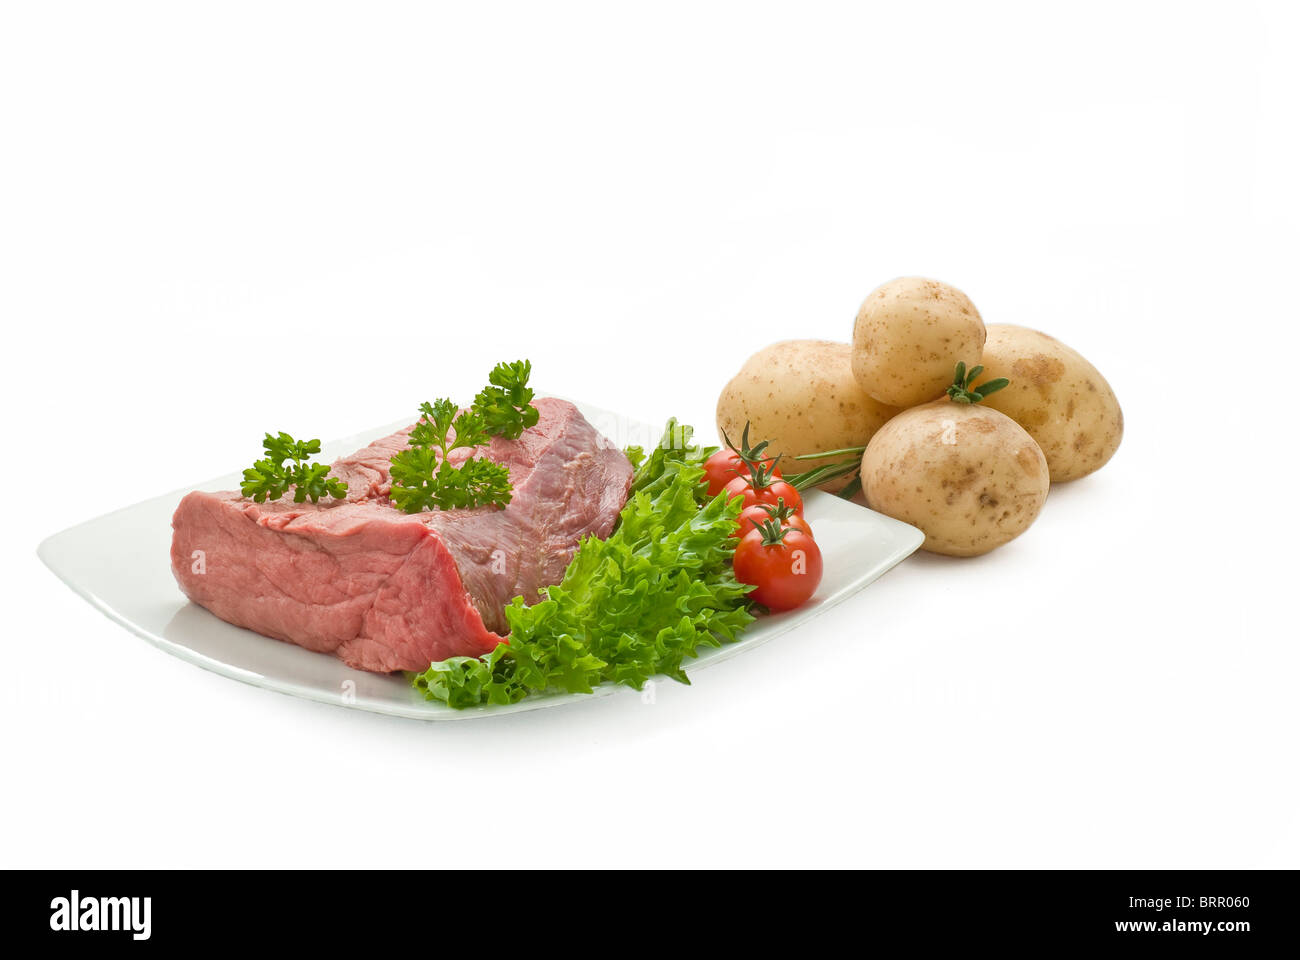 Bœuf frais inscrivez-vous avec des pommes de terre salade de tomates et fines herbes Banque D'Images